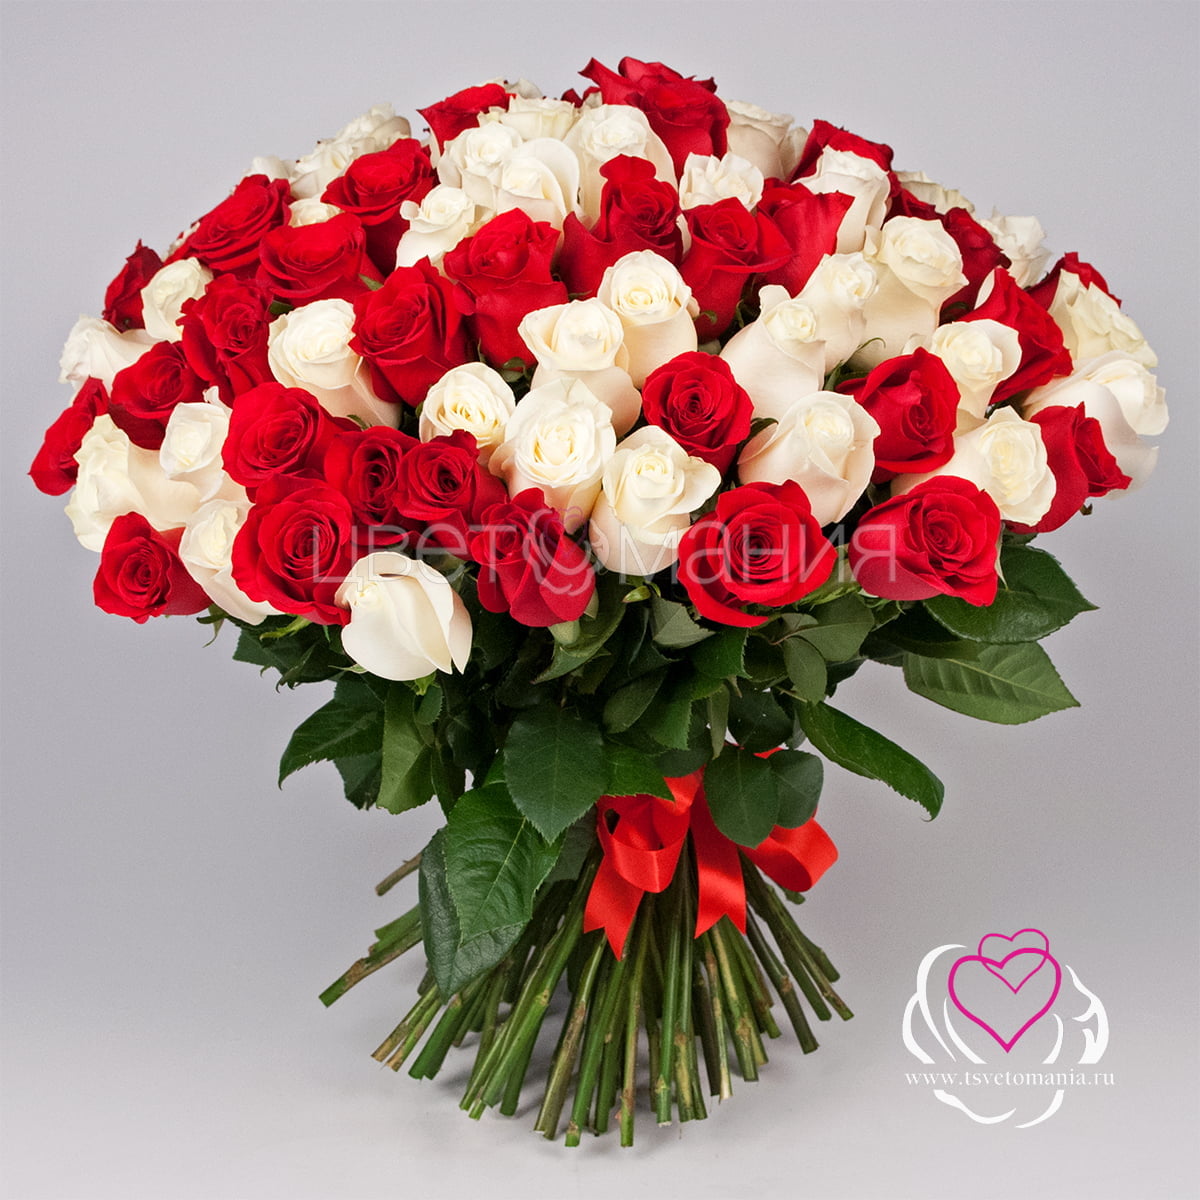 101 белая и красная роза 50 см Premium корзина 101 красная роза